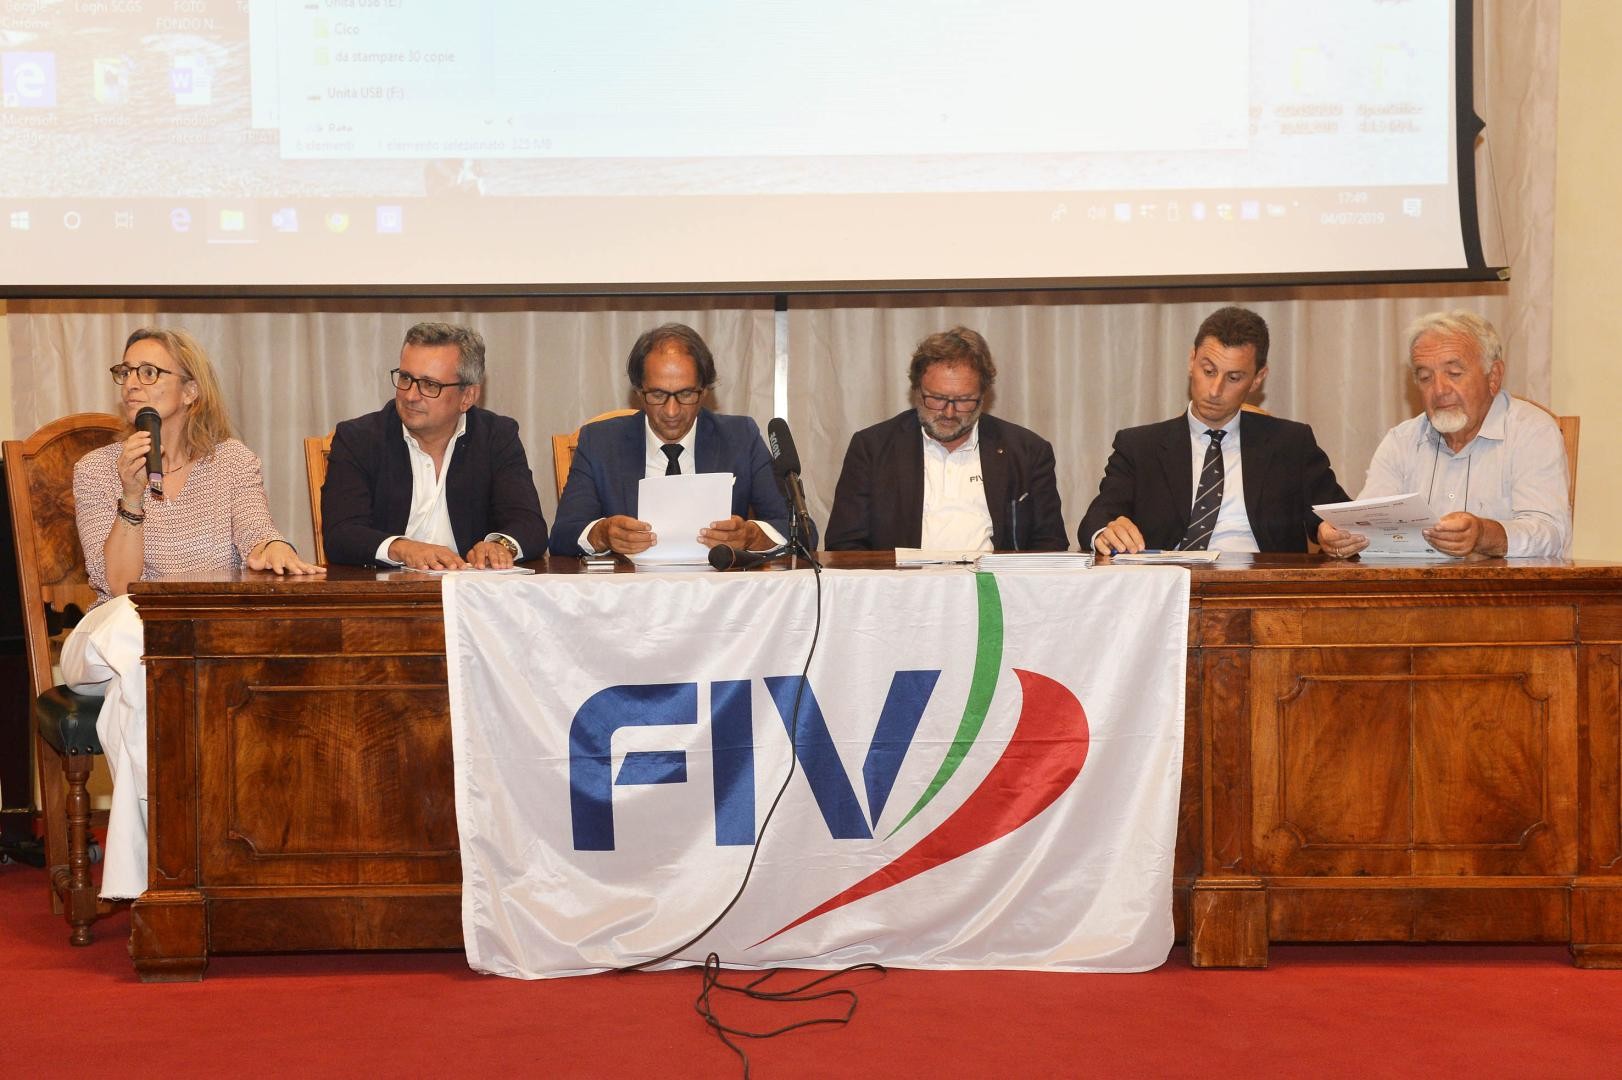 Si è tenuta ieri la conferenza stampa di presentazione del CICO 2019, che si terrà nelle acque dell’alto Garda Lombardo dall’11 al 14 settembre 2019 